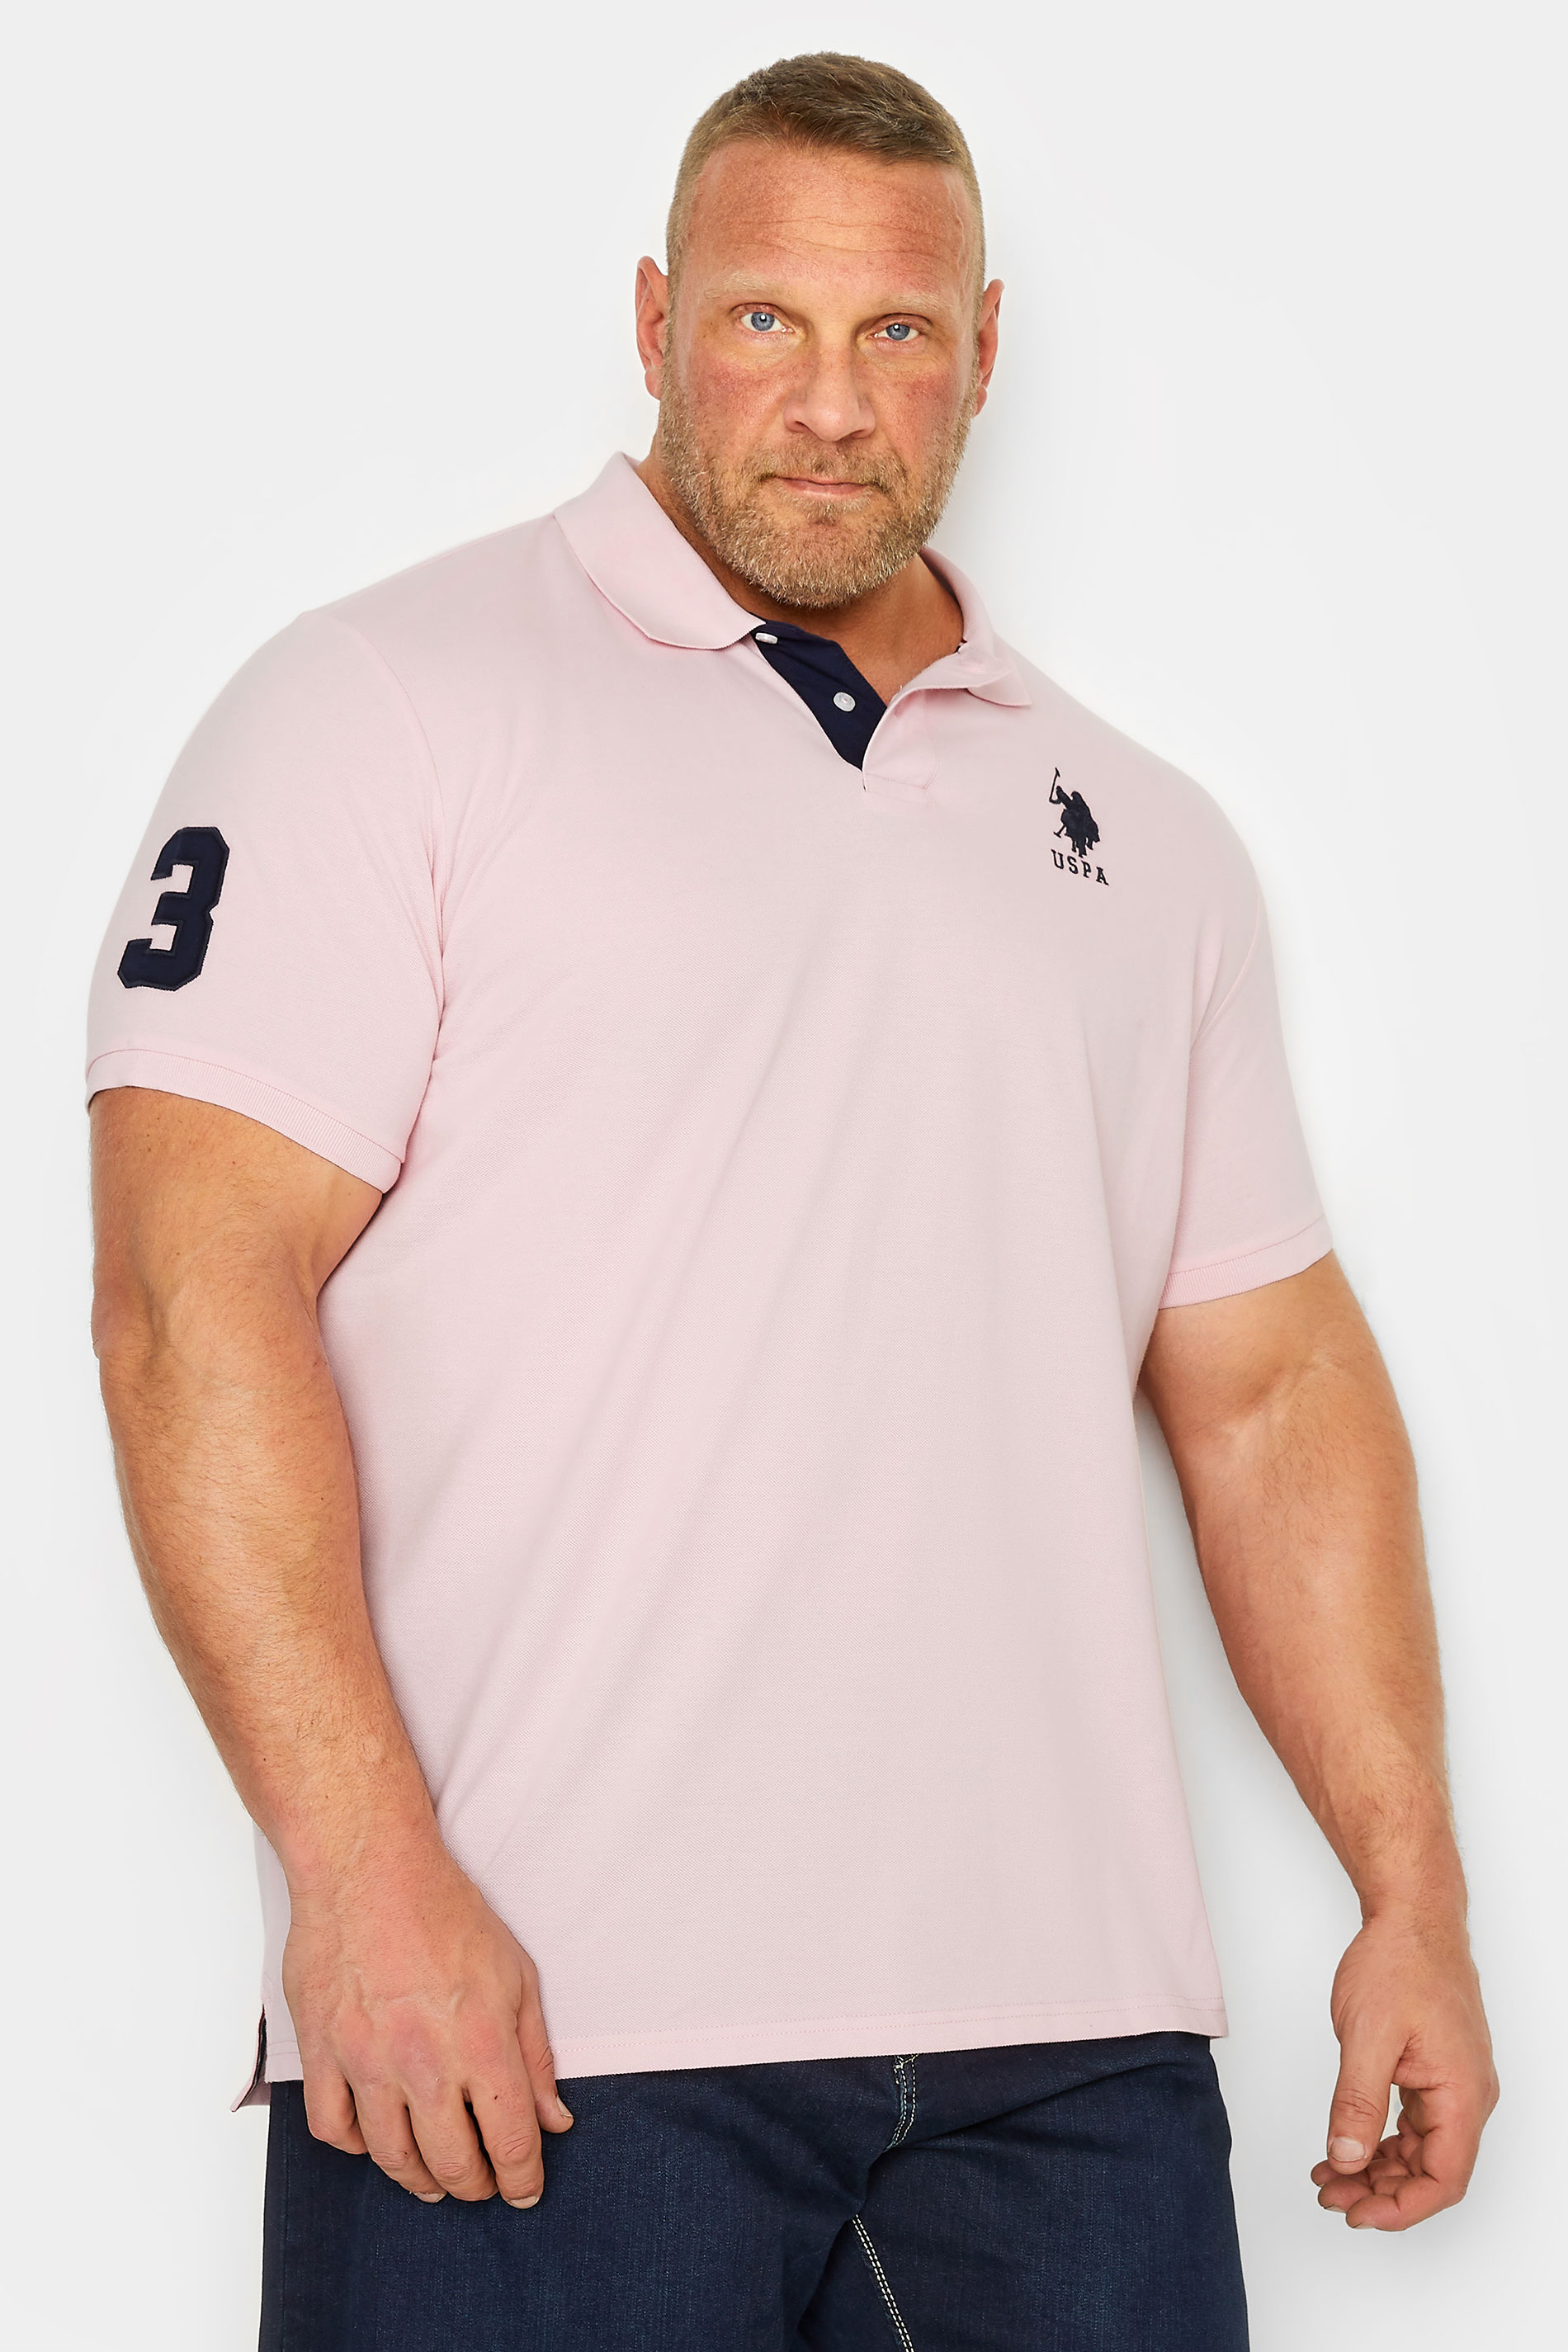 U.S. POLO ASSN. Big & Tall Pink Player 3 Polo Shirt | BadRhino 1